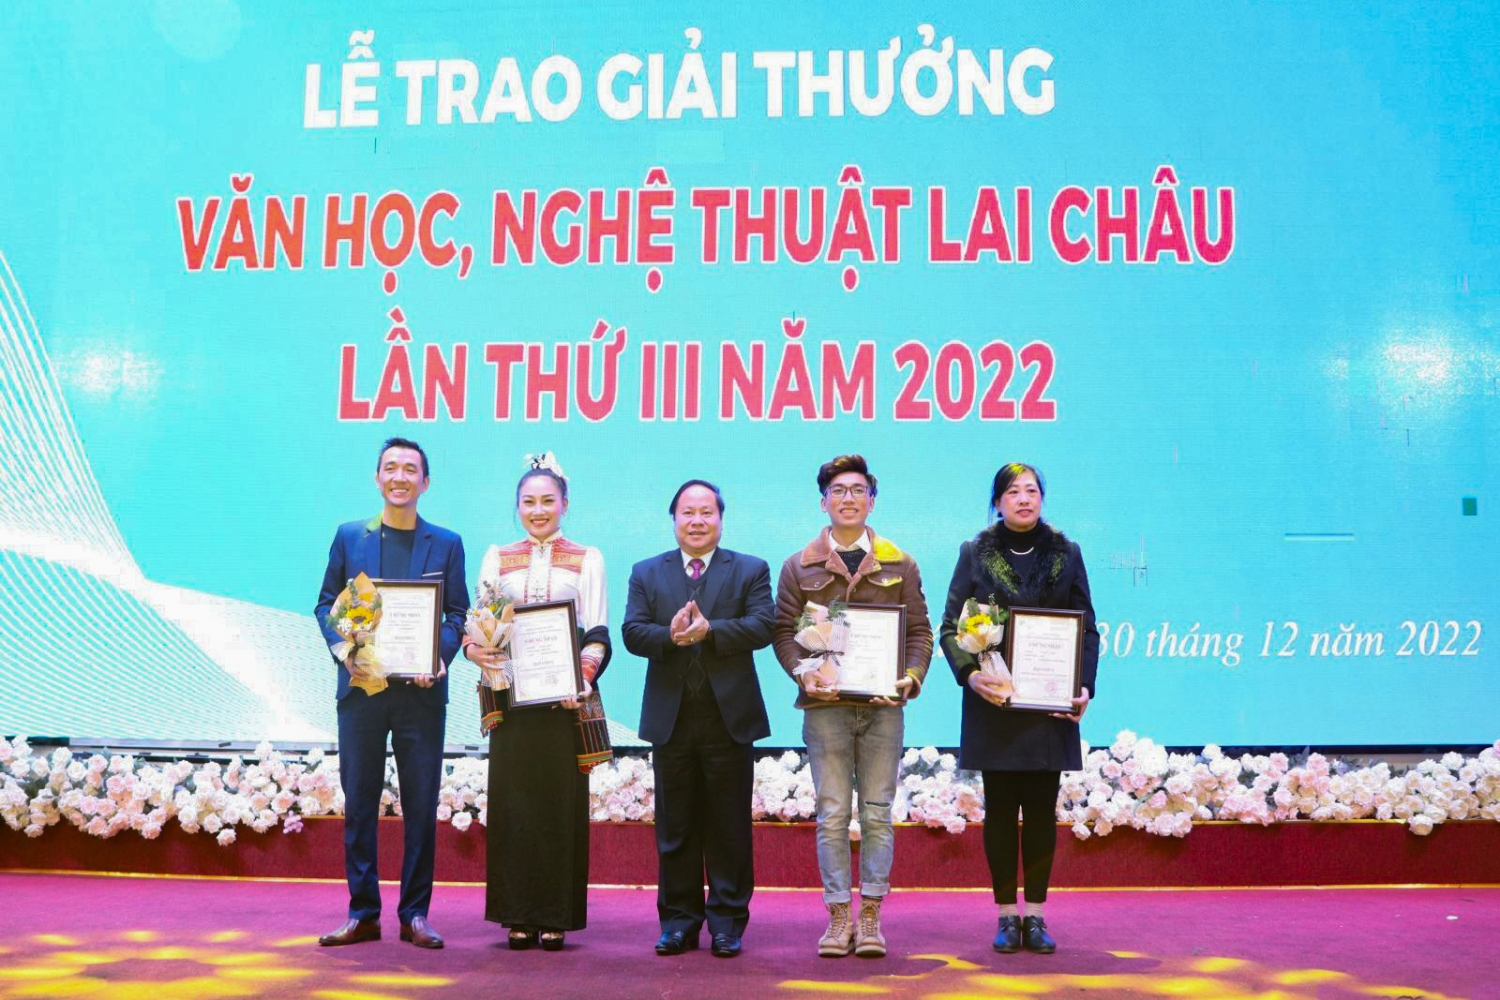 Đồng chí Tống Thanh Hải - UVBTV, Phó Chủ tịch Thường trực UBND tỉnh, Chủ tịch Hội đồng Xét tặng giải thưởng Văn học, Nghệ thuật Lai Châu lần thứ III năm 2022 trao giải A cho các tác giả đạt Giải.